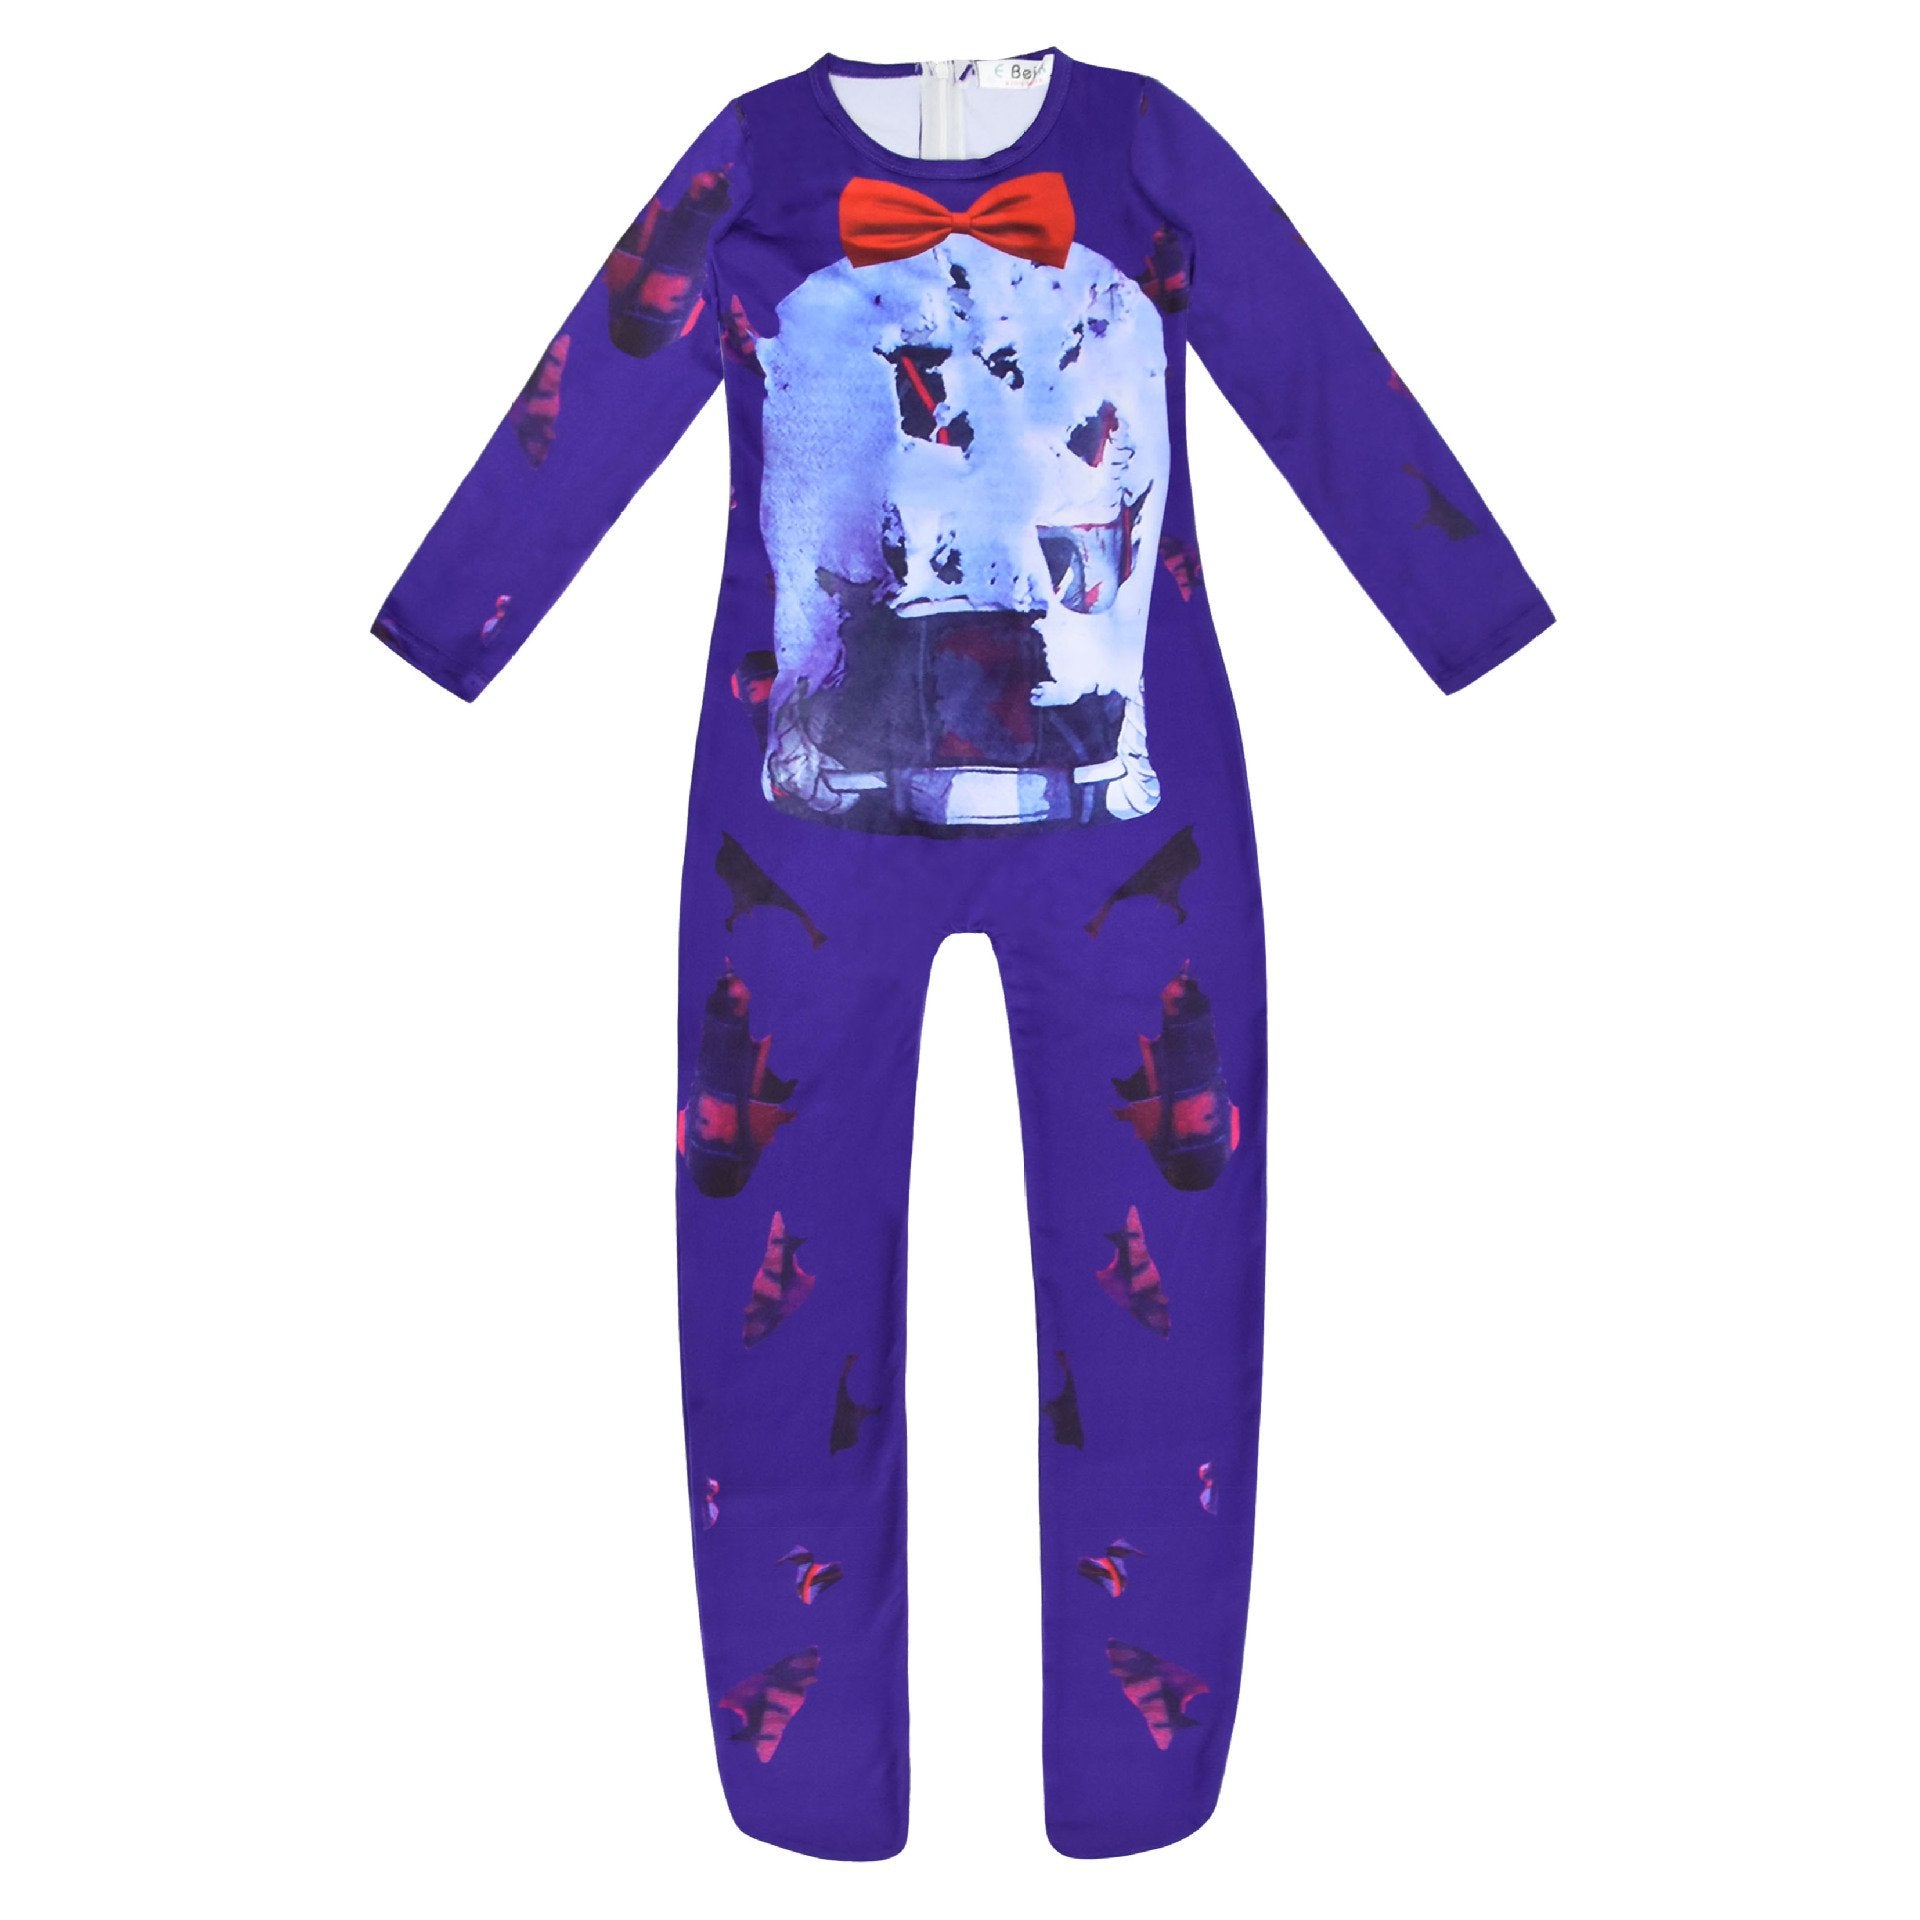 Kids Teddy Bear Cosplay Halloween Costume Jumpsuit Zentai Suits